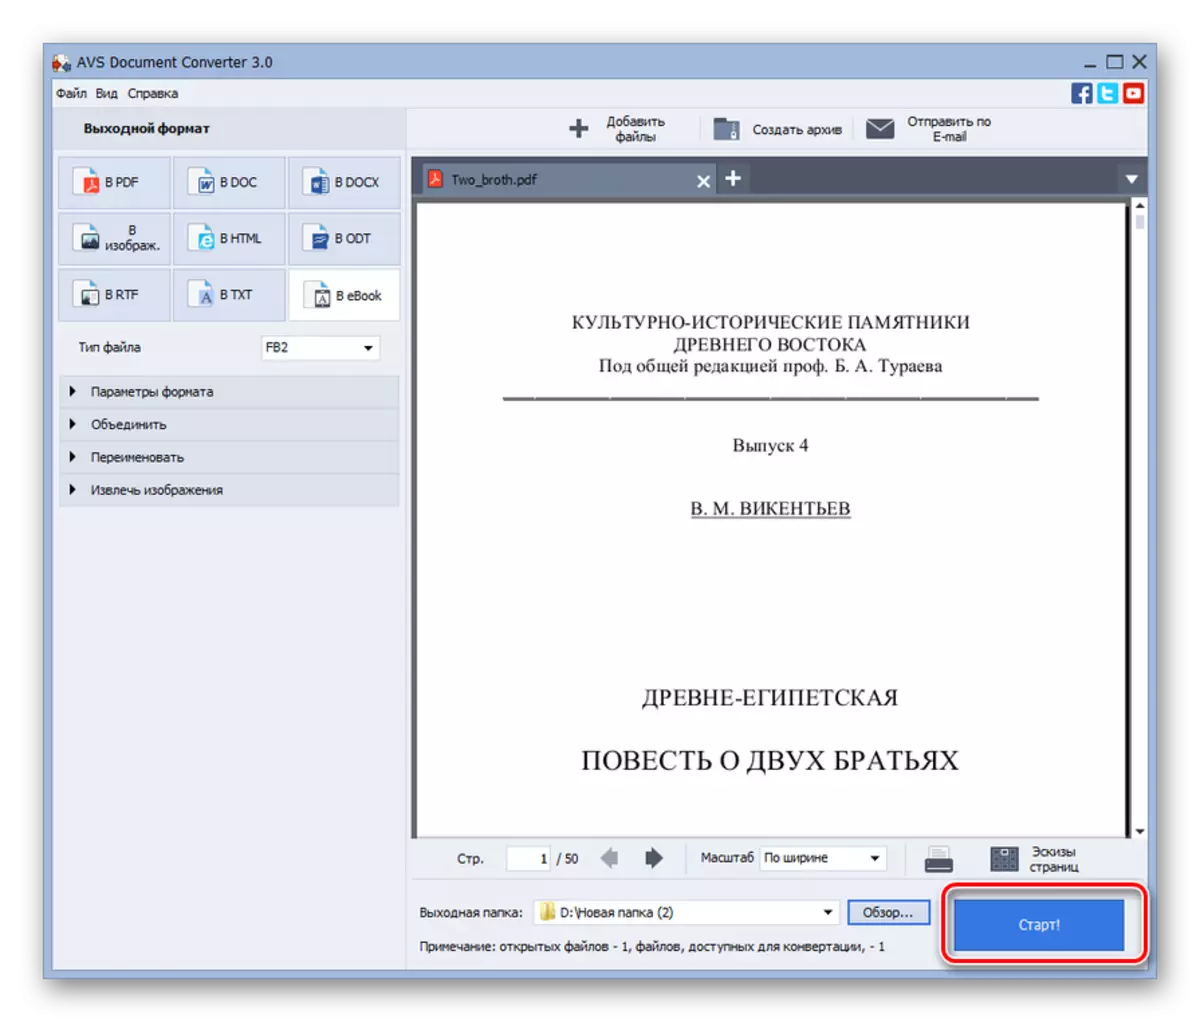 Rufft PDF Konversiounsprozedur zu FB2 am AVS Dokument Konverter